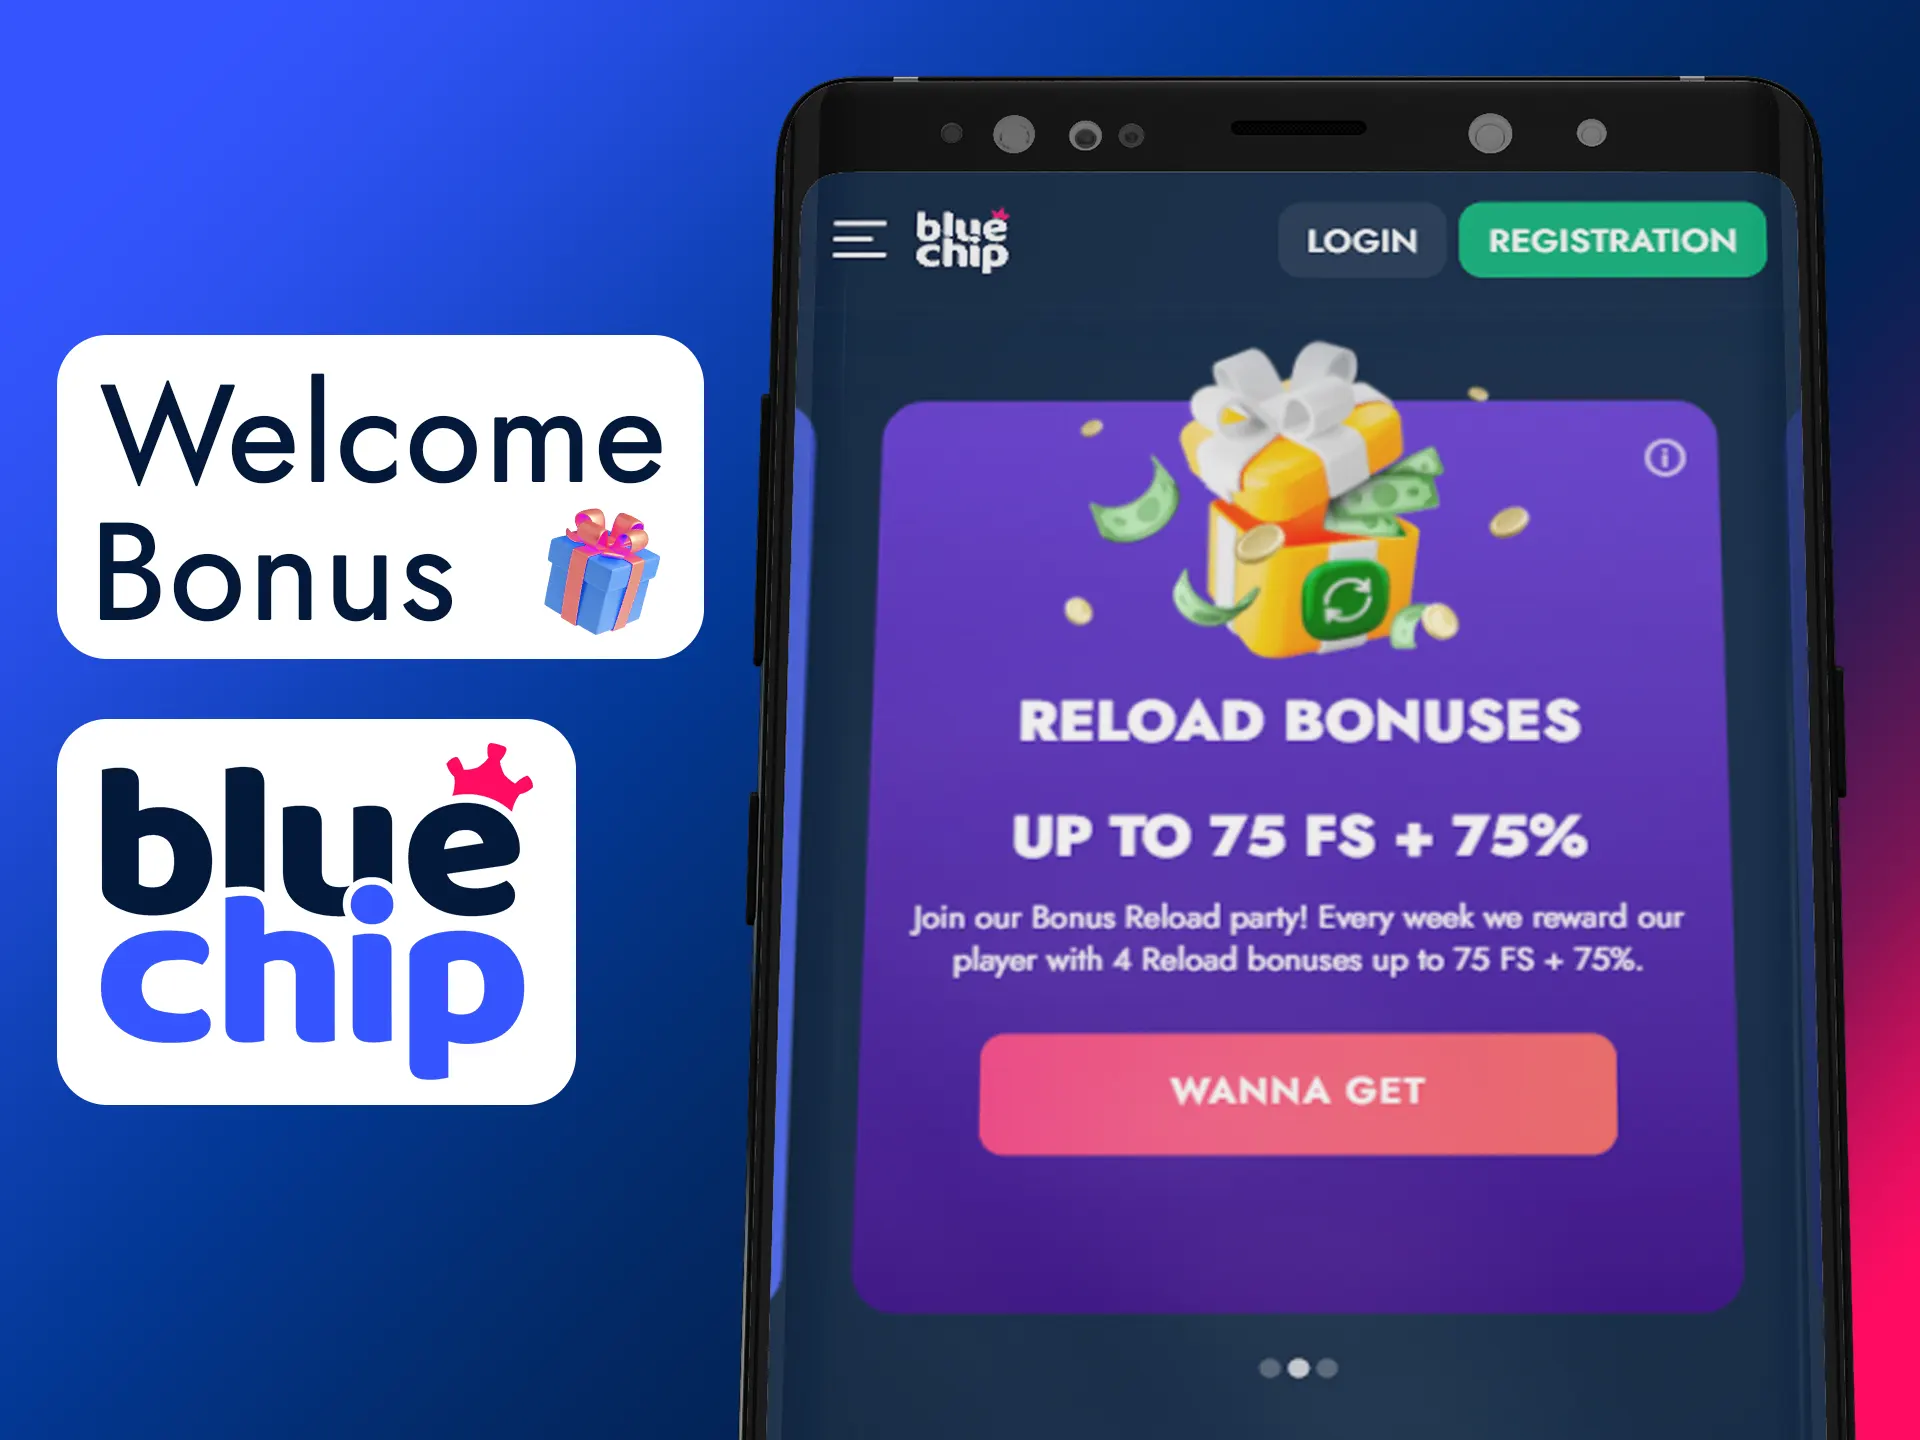 Get your welcome bonus after registration in app.